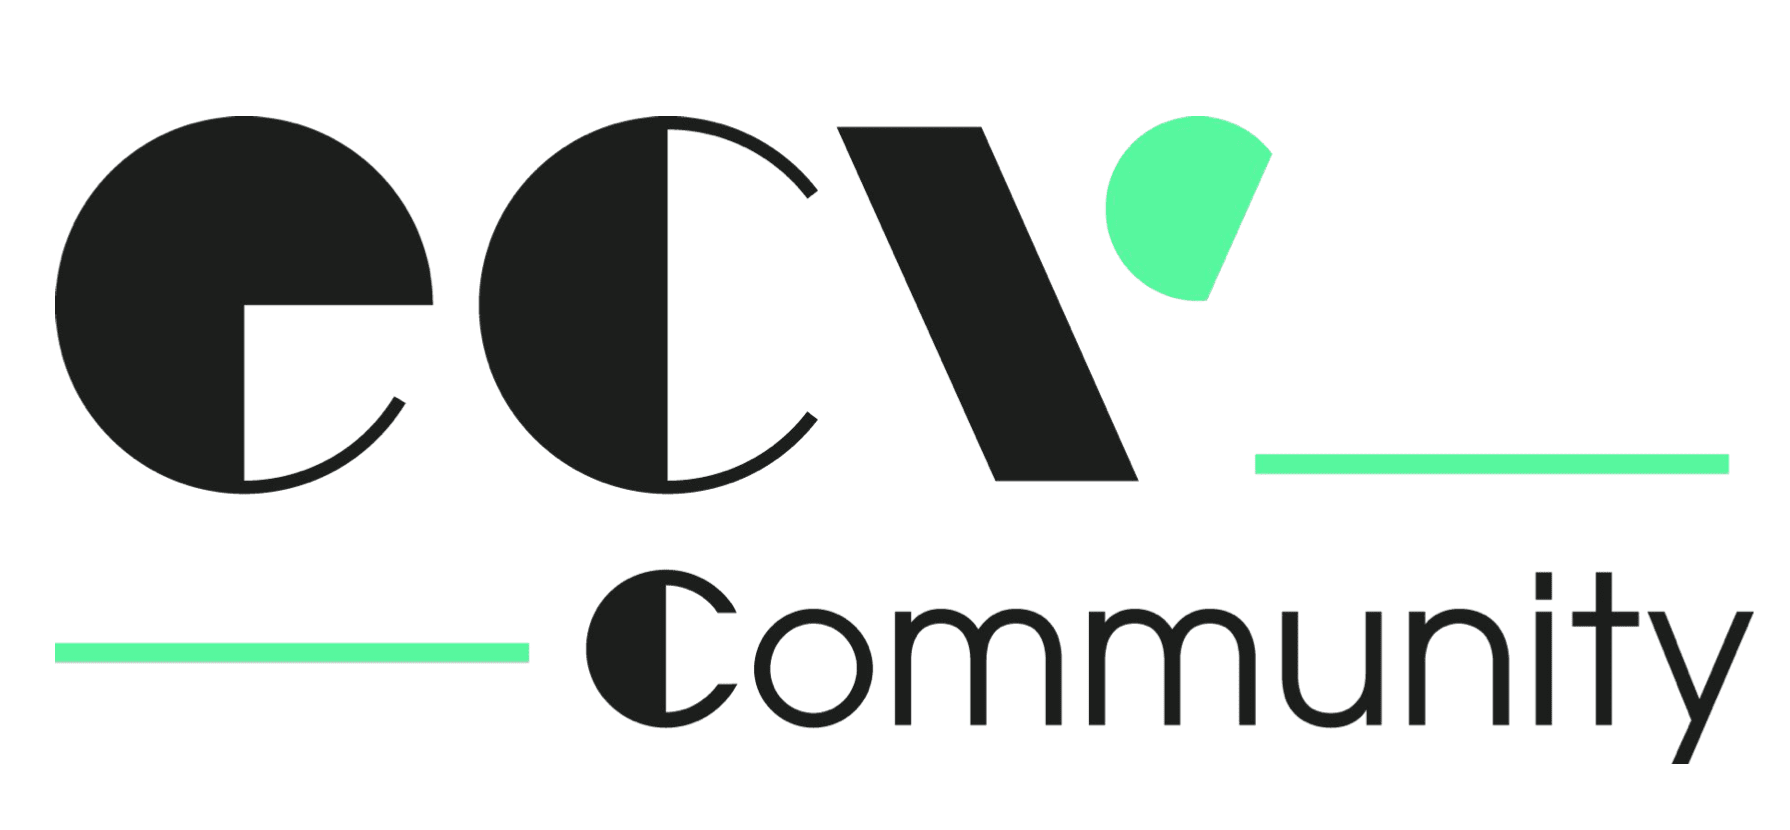 ECV Community